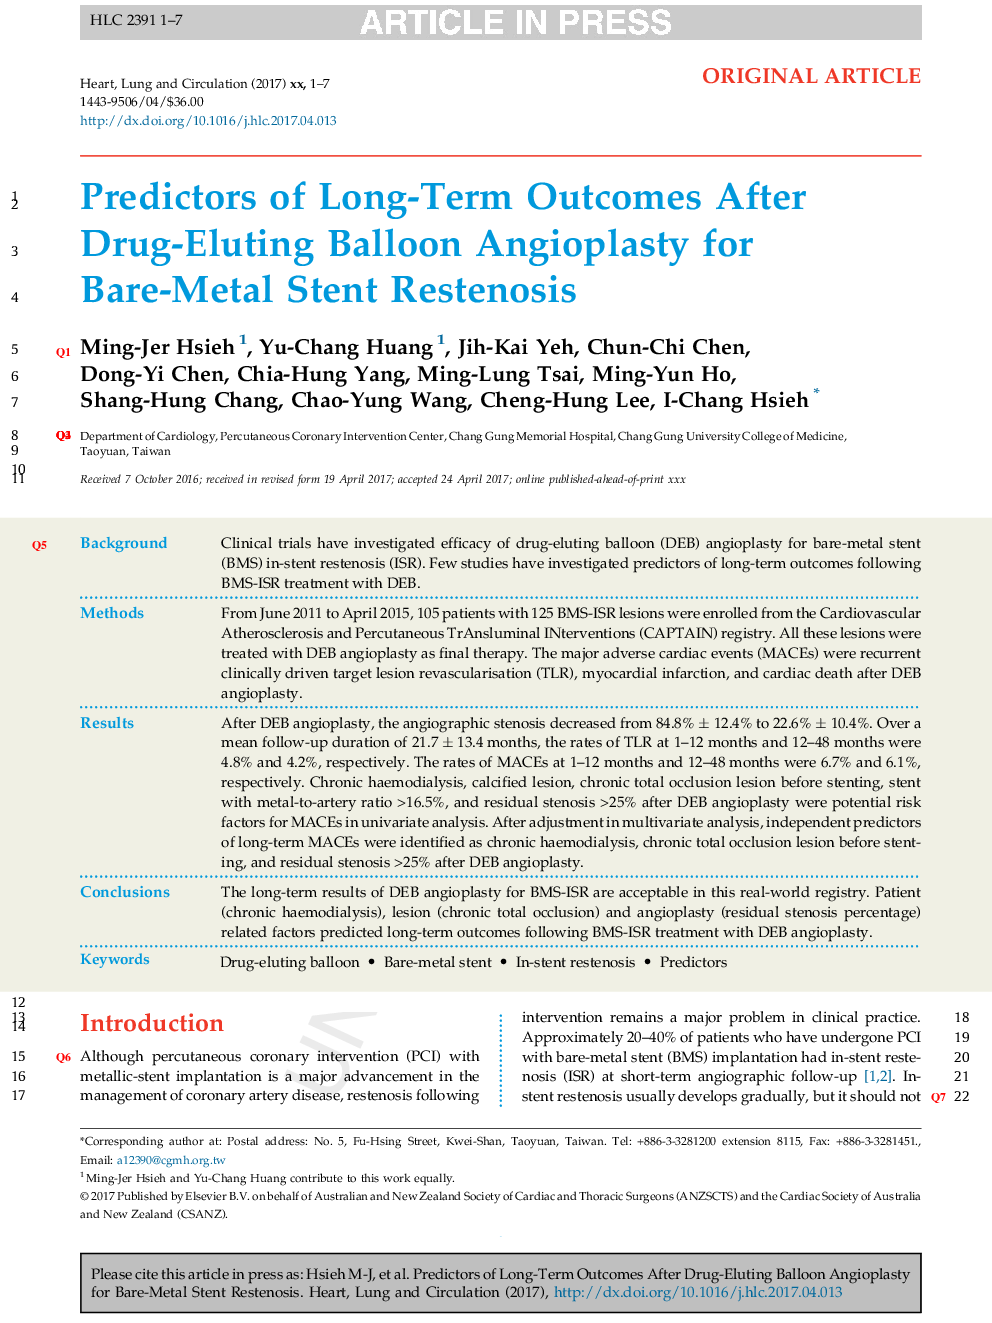 پیش بینی کننده نتایج بلندمدت پس از آنژیوپلاستی بالون بالینی برای استنت ریستون 